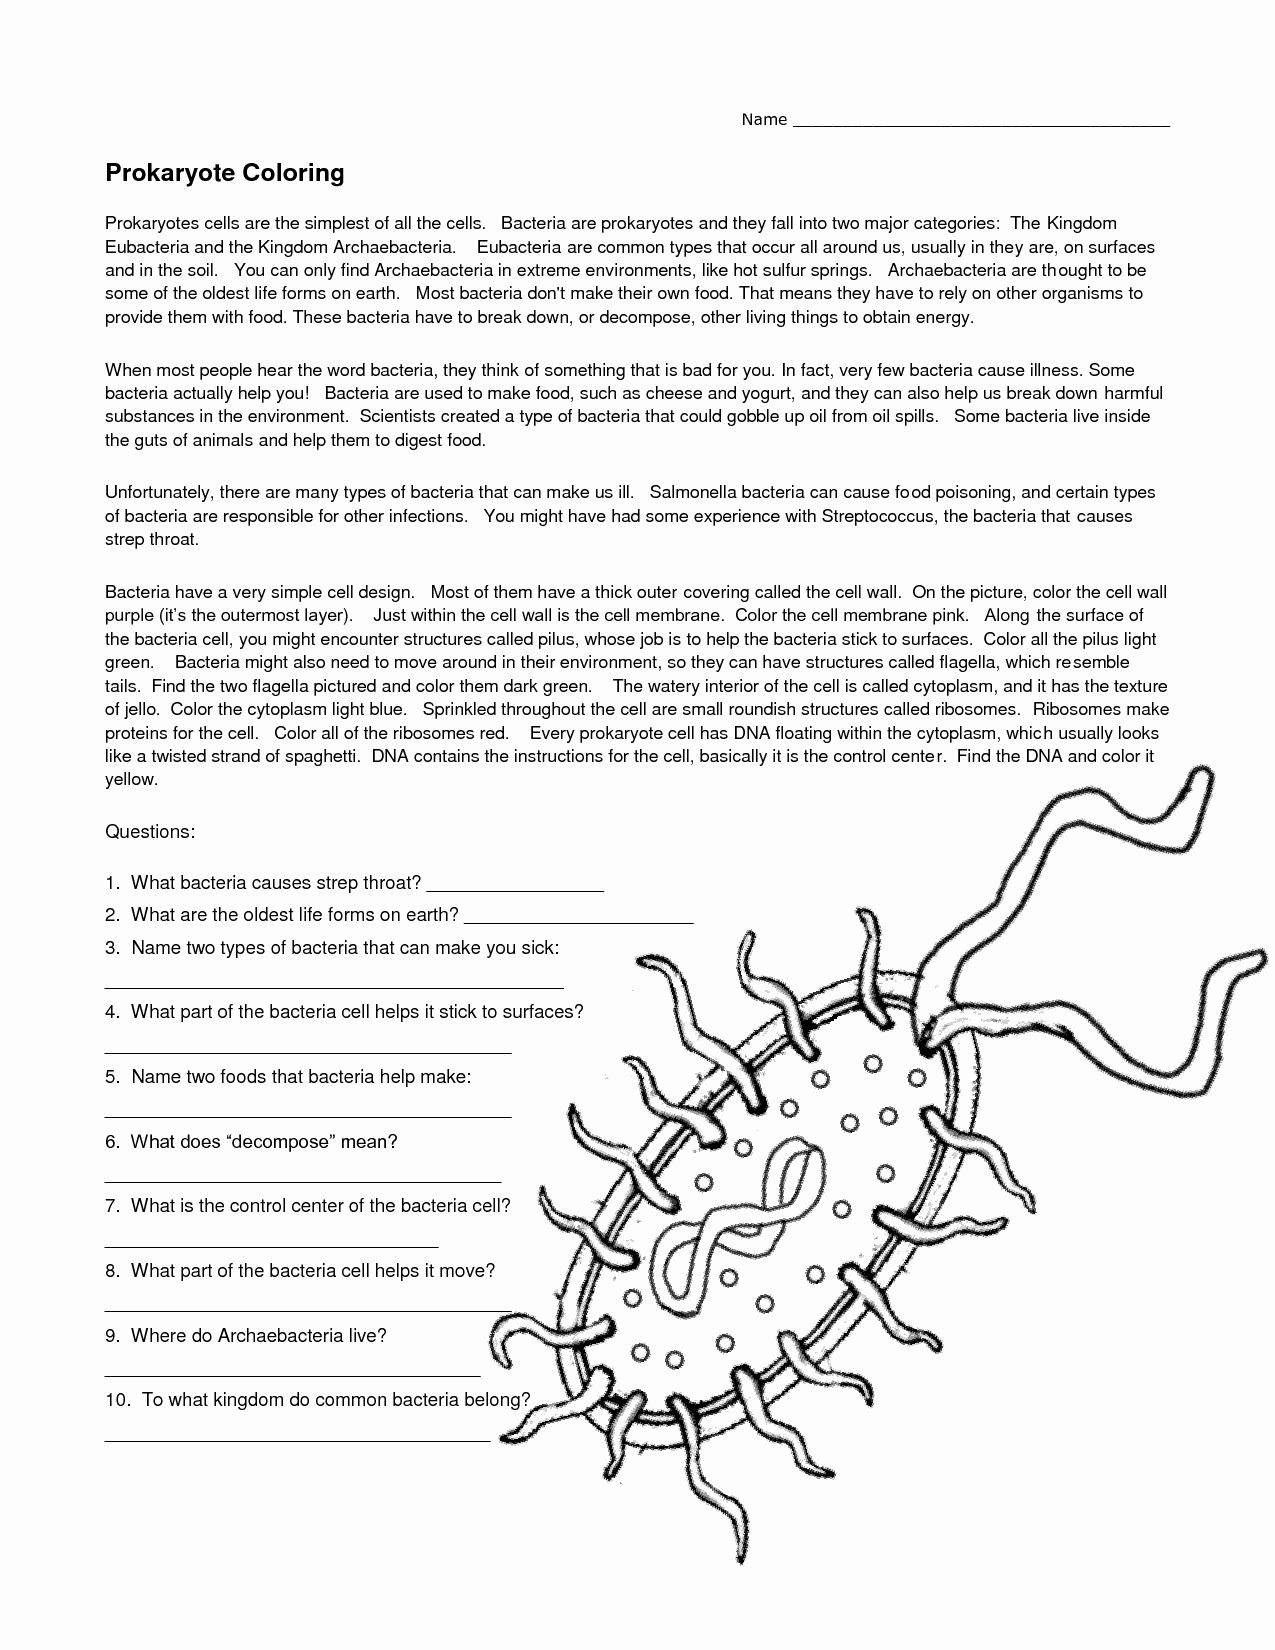 Prokaryotes Bacteria Worksheet Answers Elegant 14 Best Of Viruses and Bacteria Worksheets